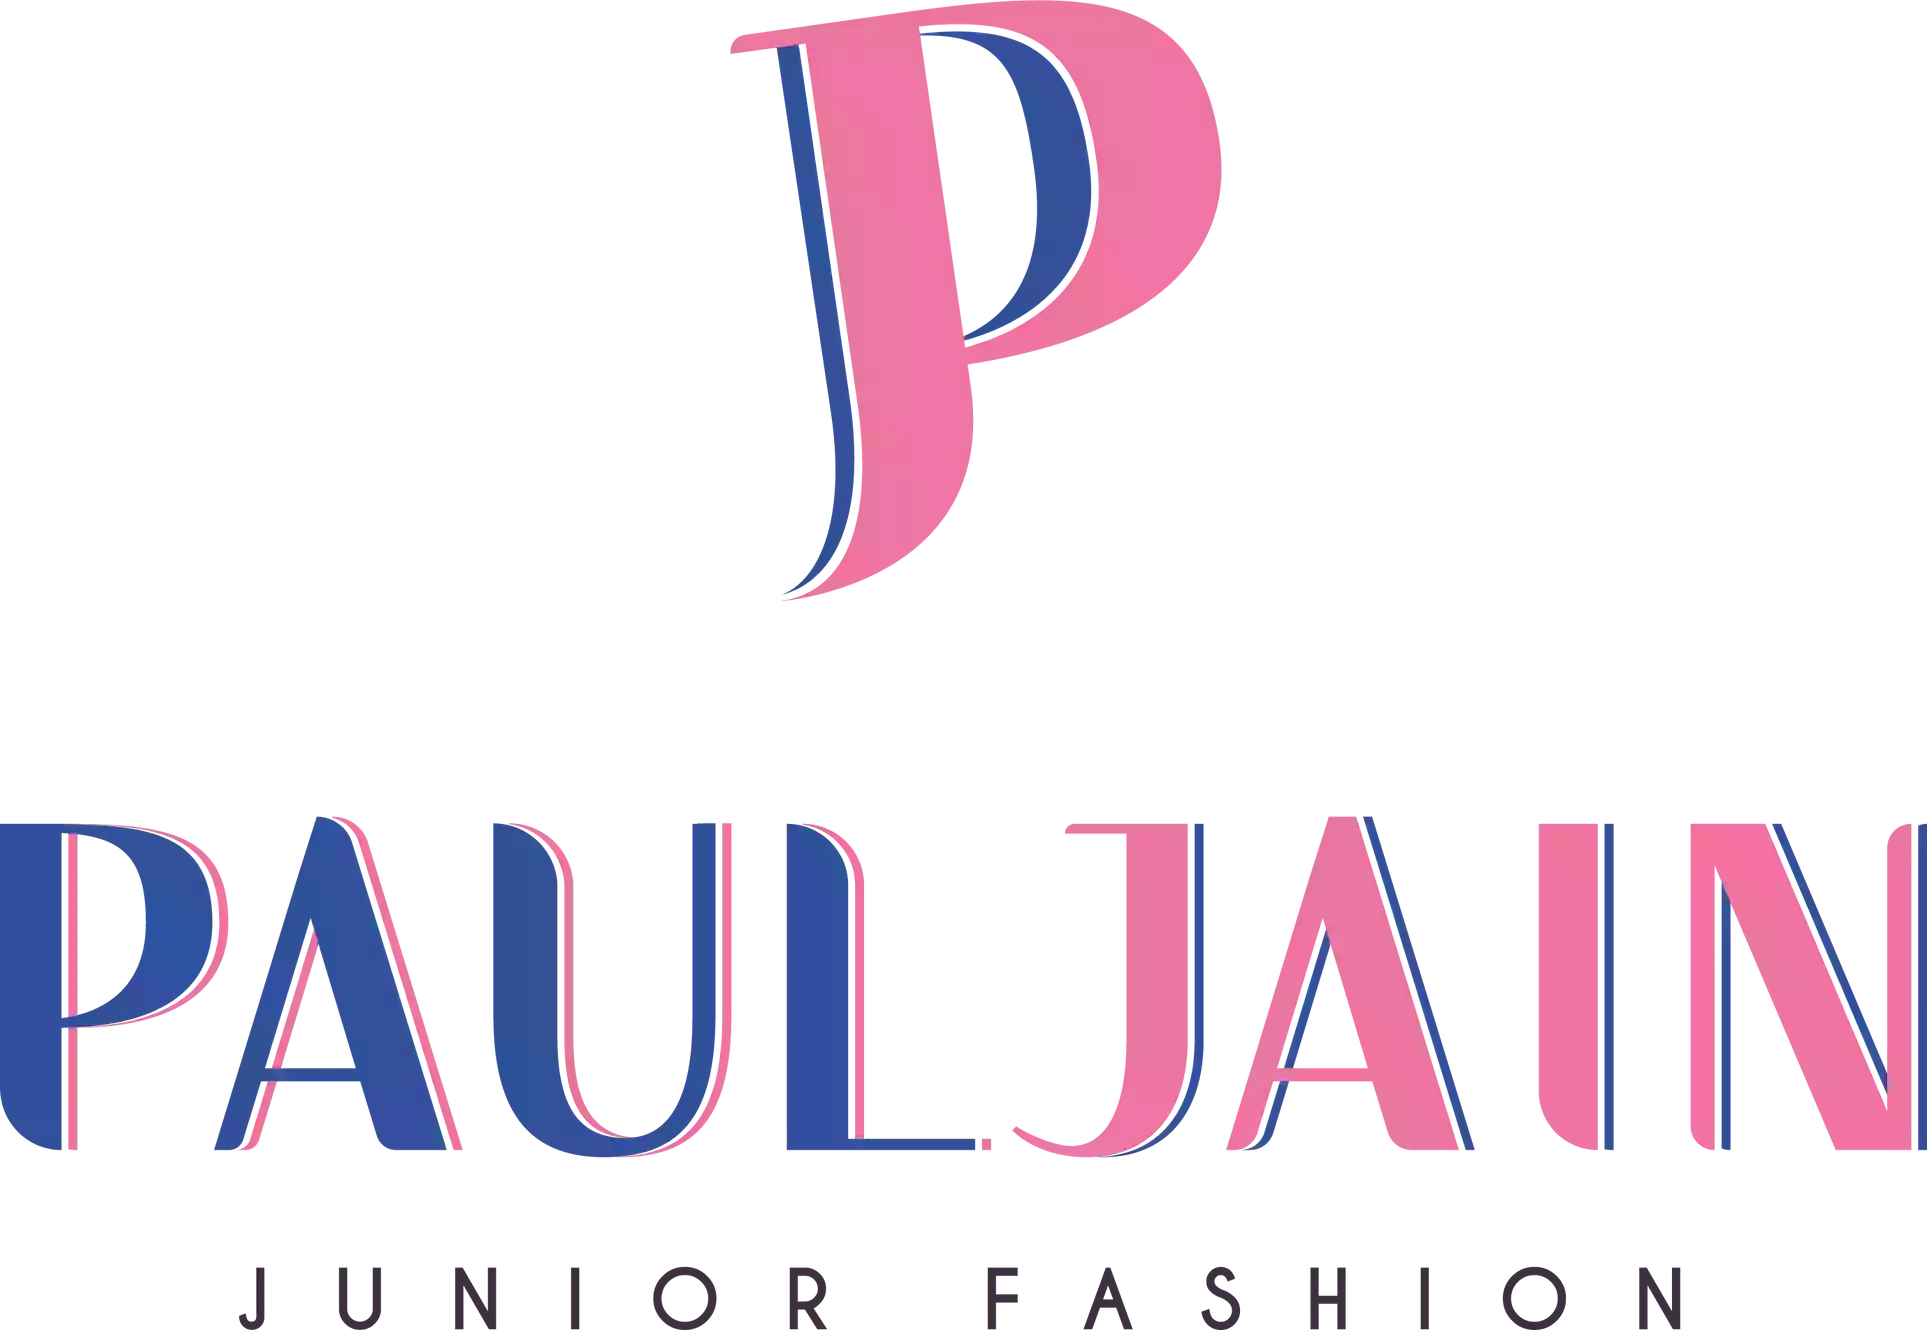 Paul Jain Junior Fashion